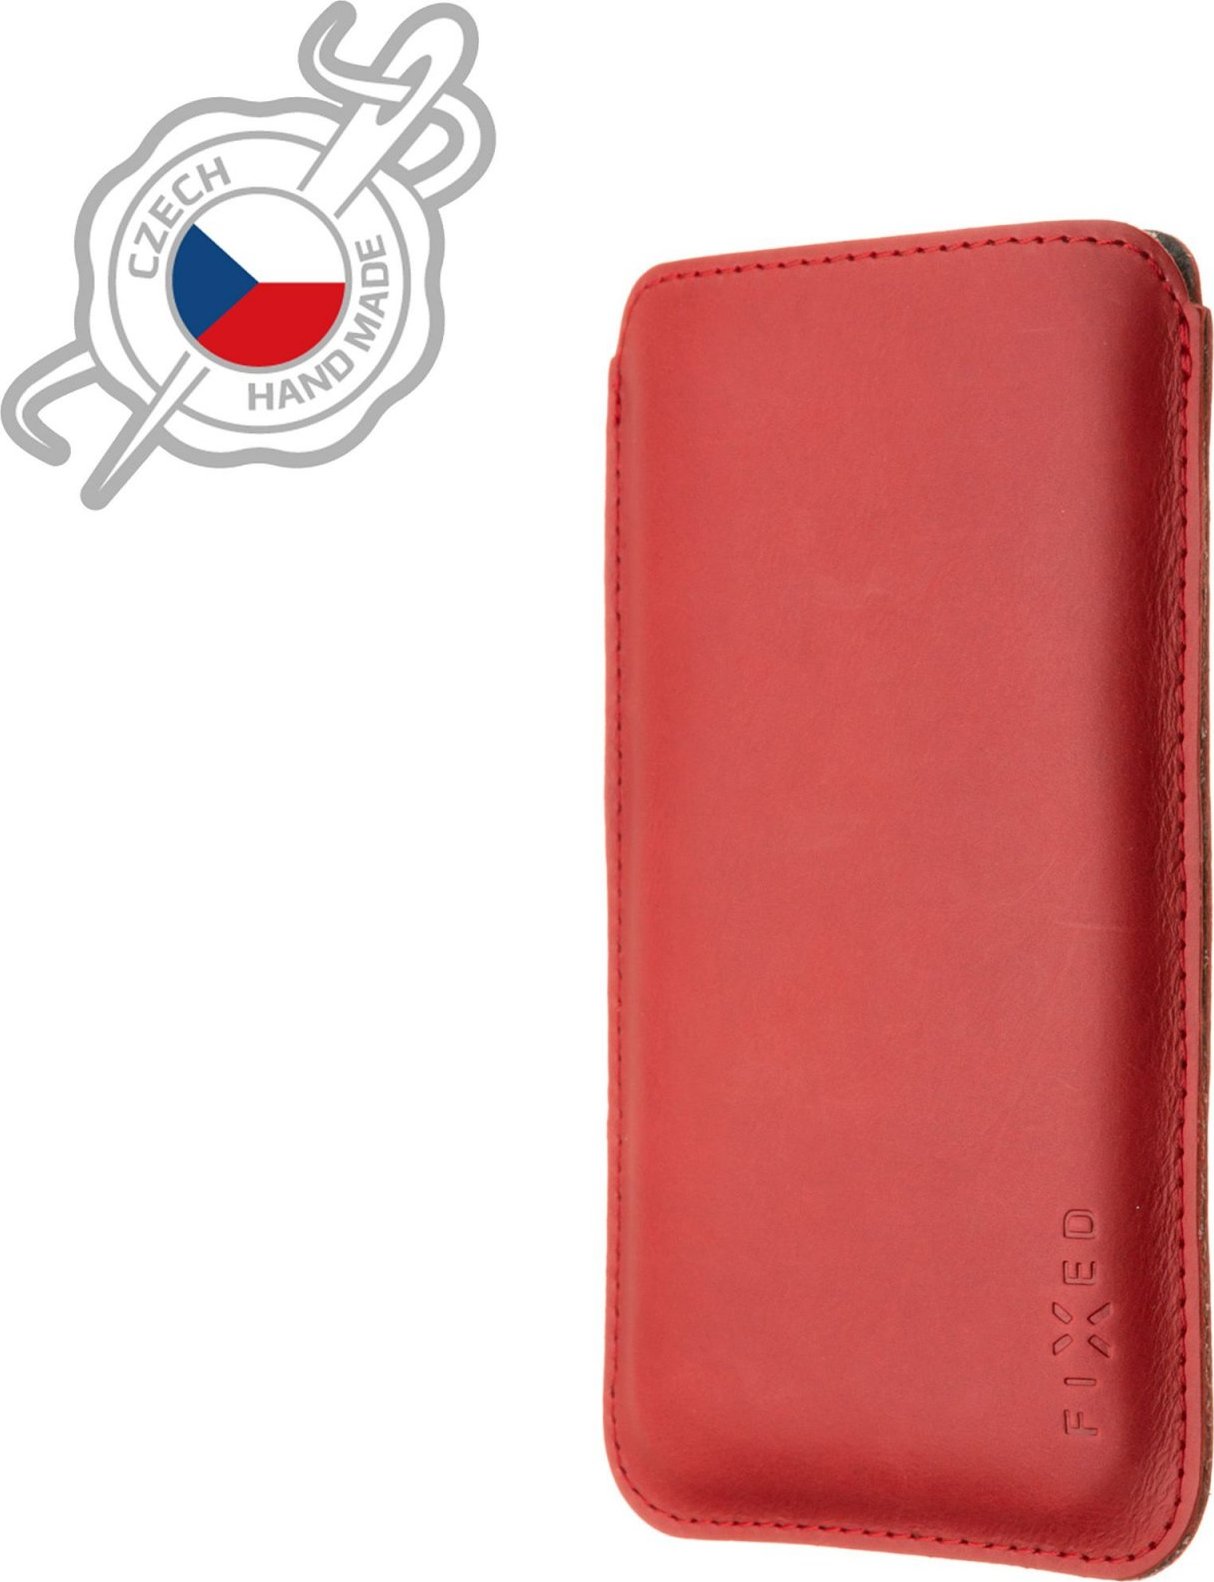 Tenké pouzdro FIXED Slim vyrobené z pravé kůže pro Apple iPhone 12/12 Pro/13/13 Pro, červené